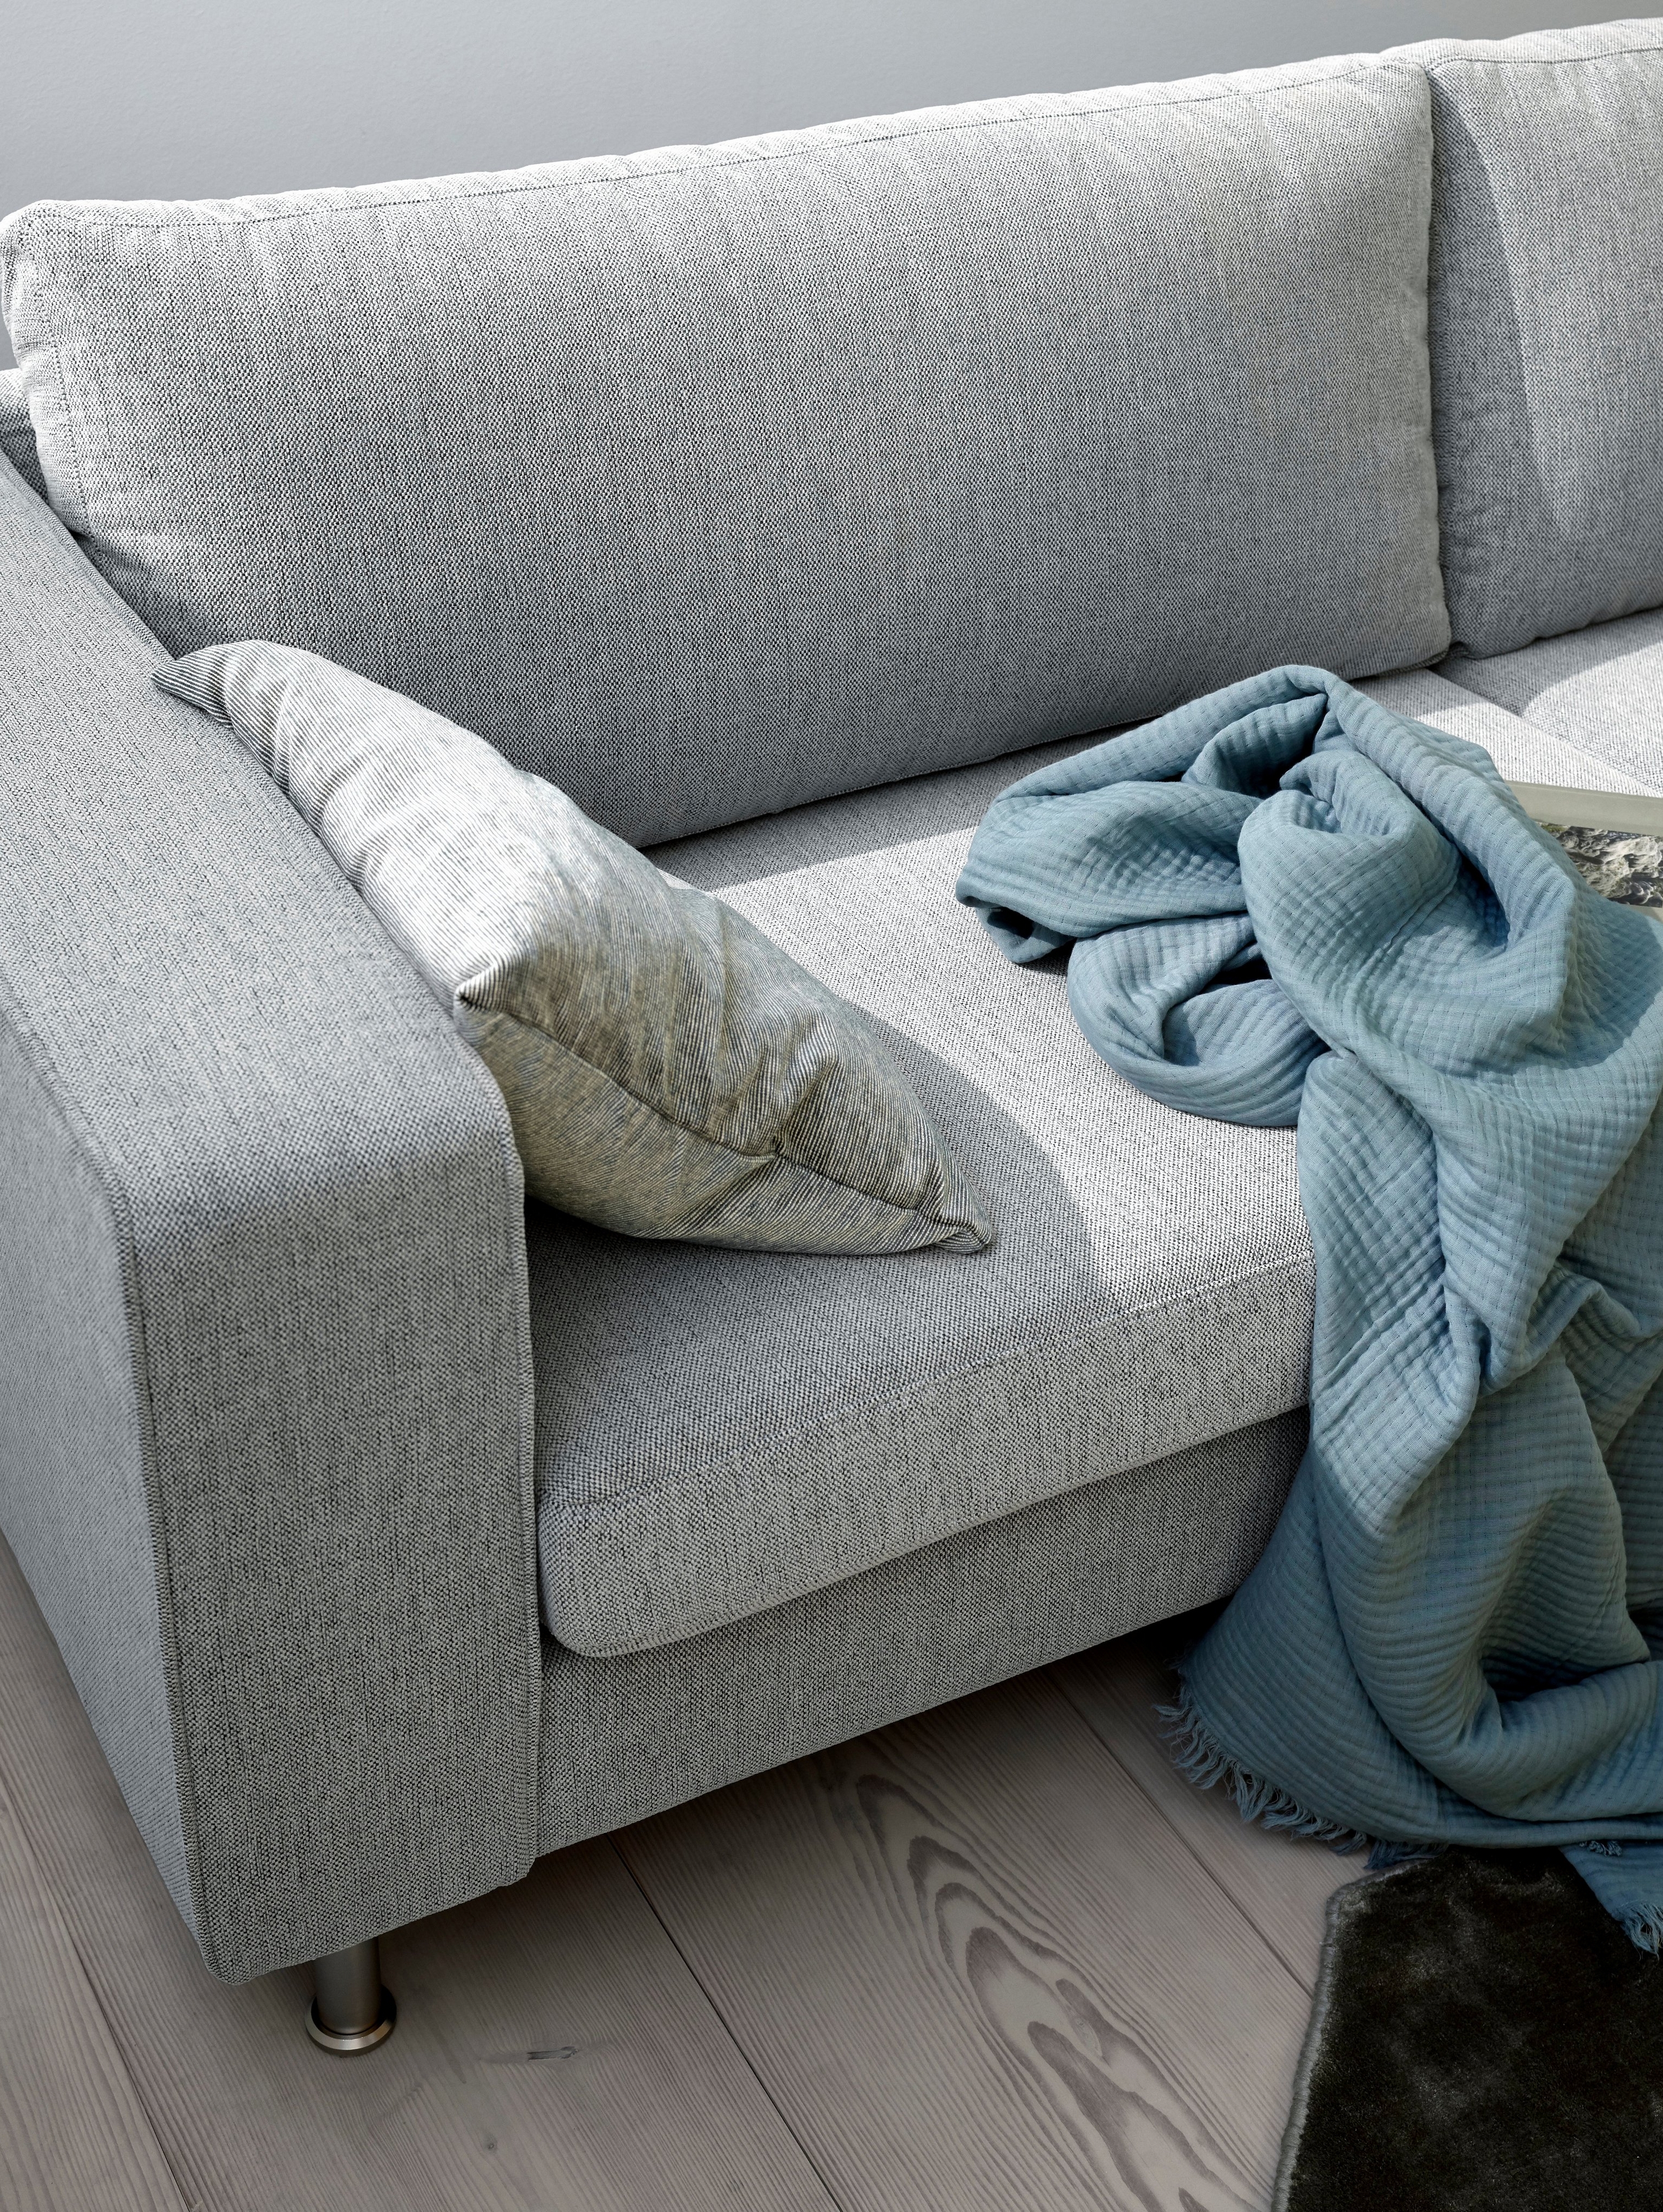 Indivi 沙发提供不同款式和颜色选择。